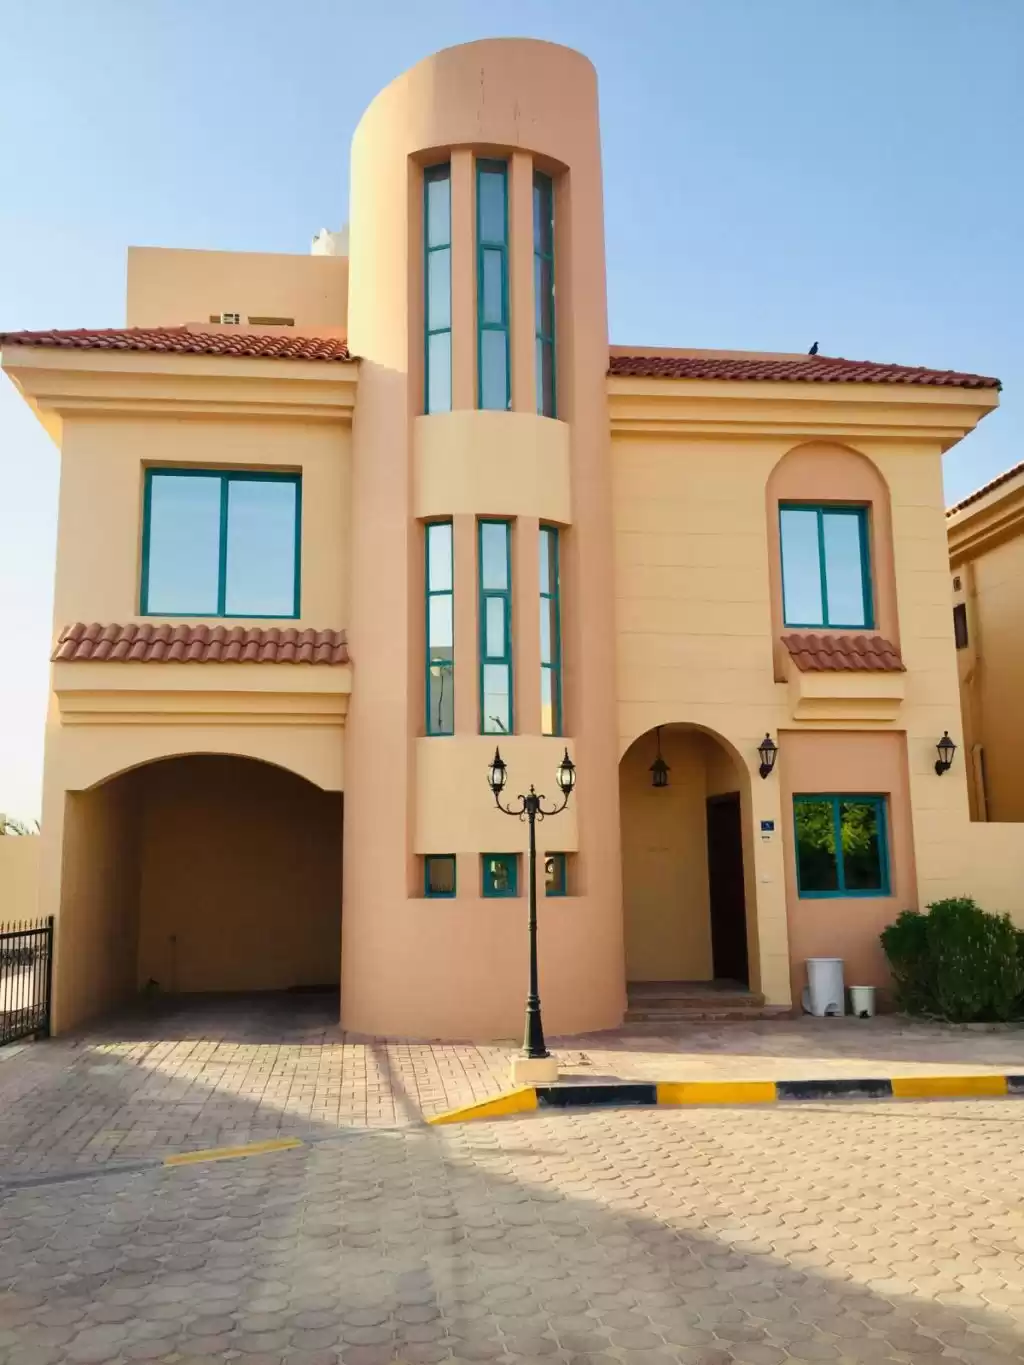 Résidentiel Propriété prête 5 chambres U / f Villa autonome  a louer au Al-Sadd , Doha #9657 - 1  image 